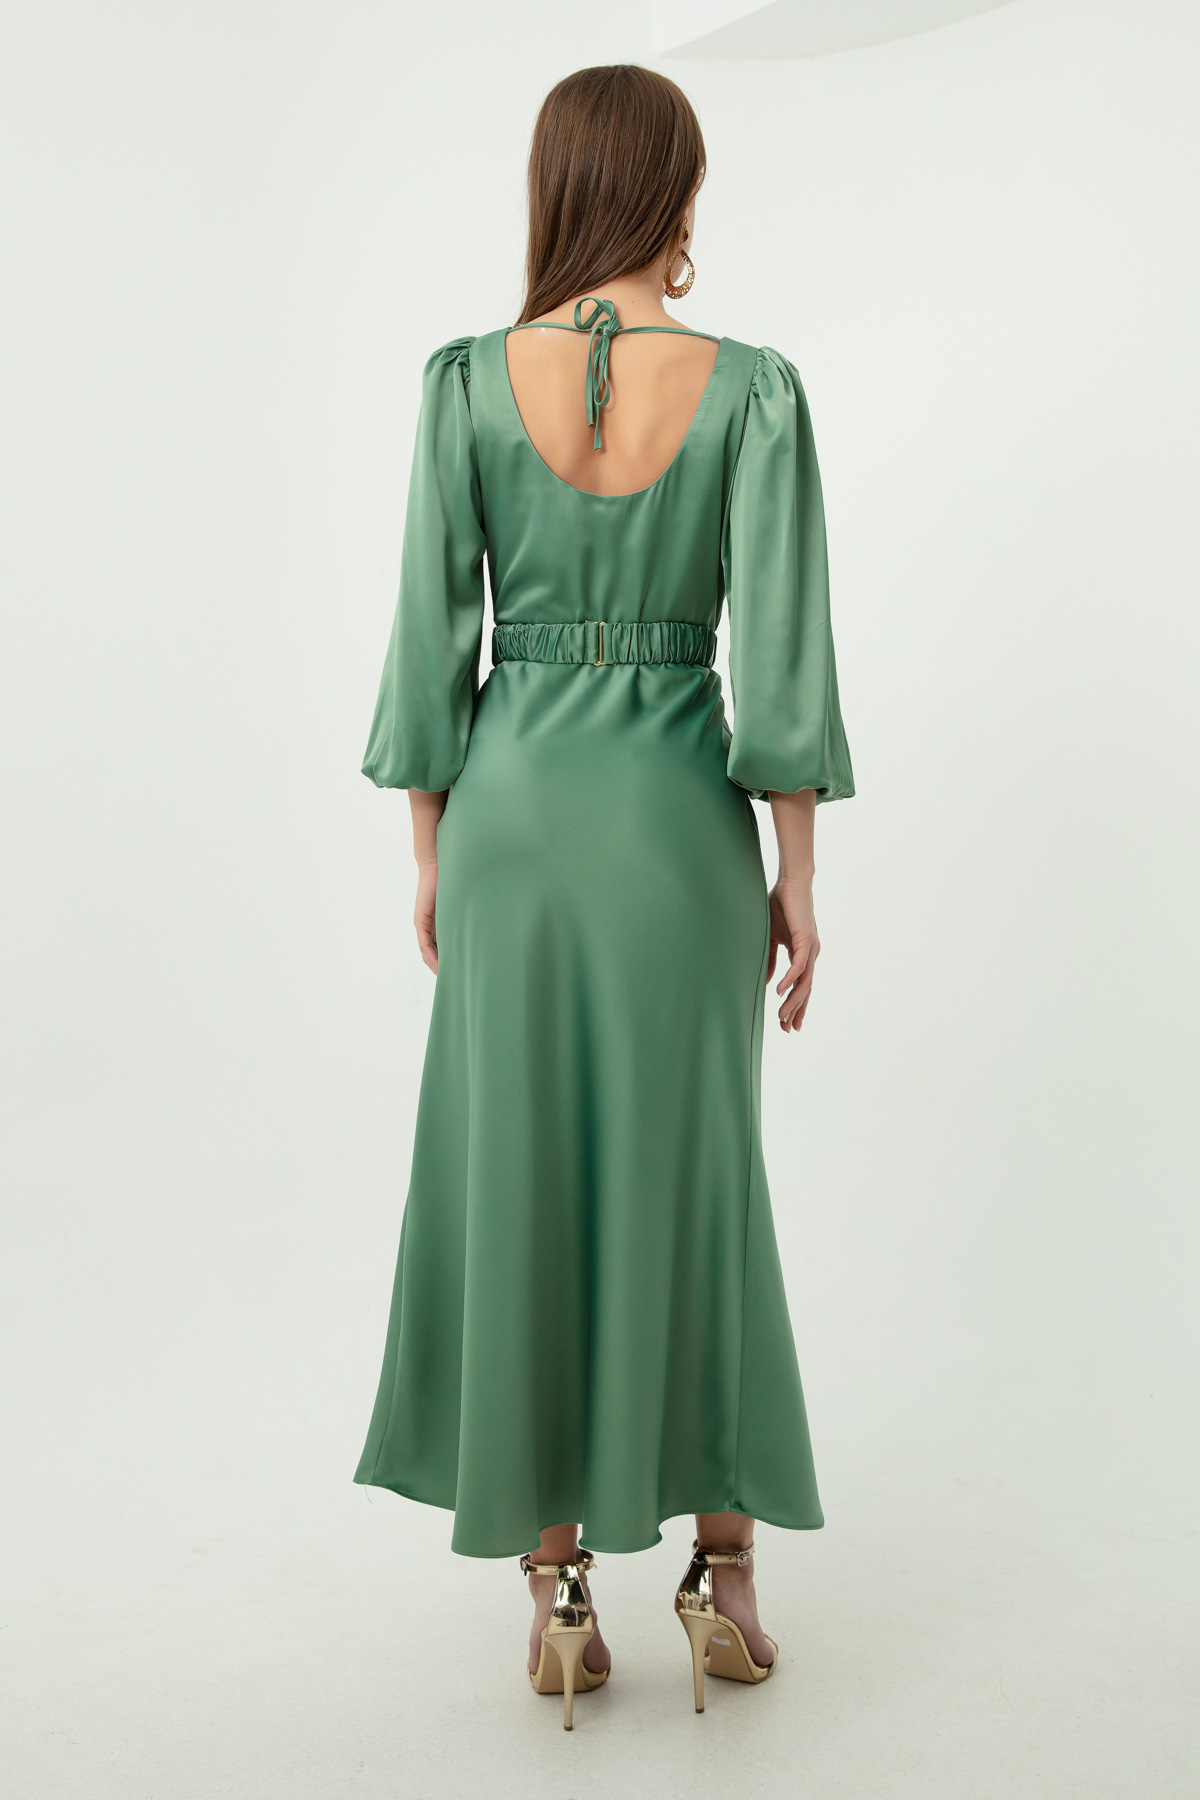 Women's Mint Green Engagement Dress